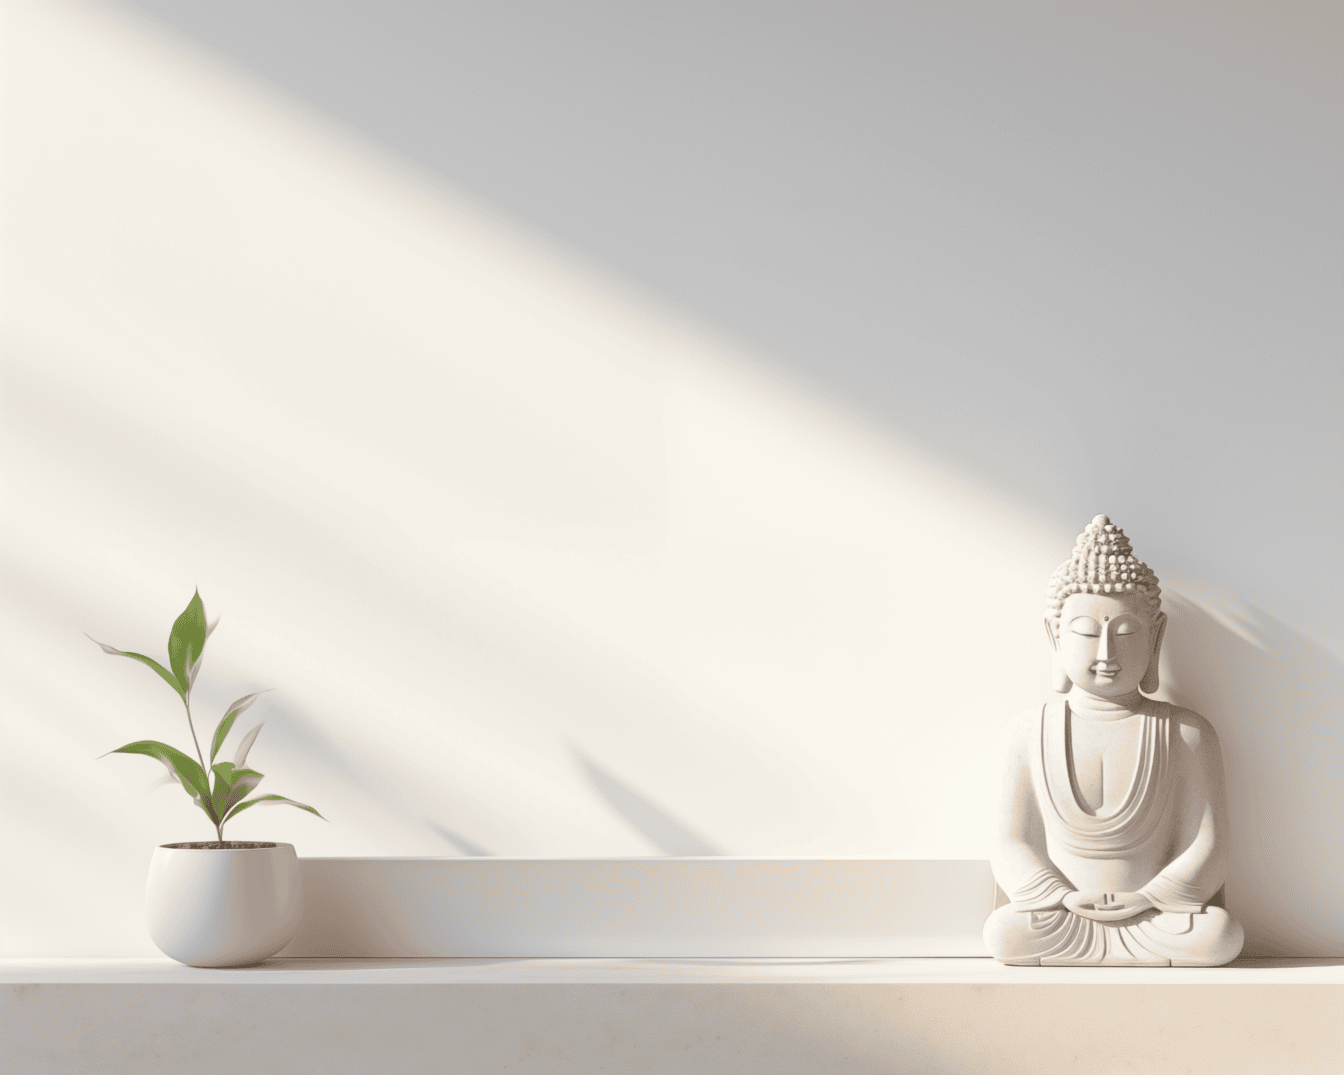 Бяла фигурка на медитиращ буда в лотосова позиция на рафт на бяла стена под нежна сянка